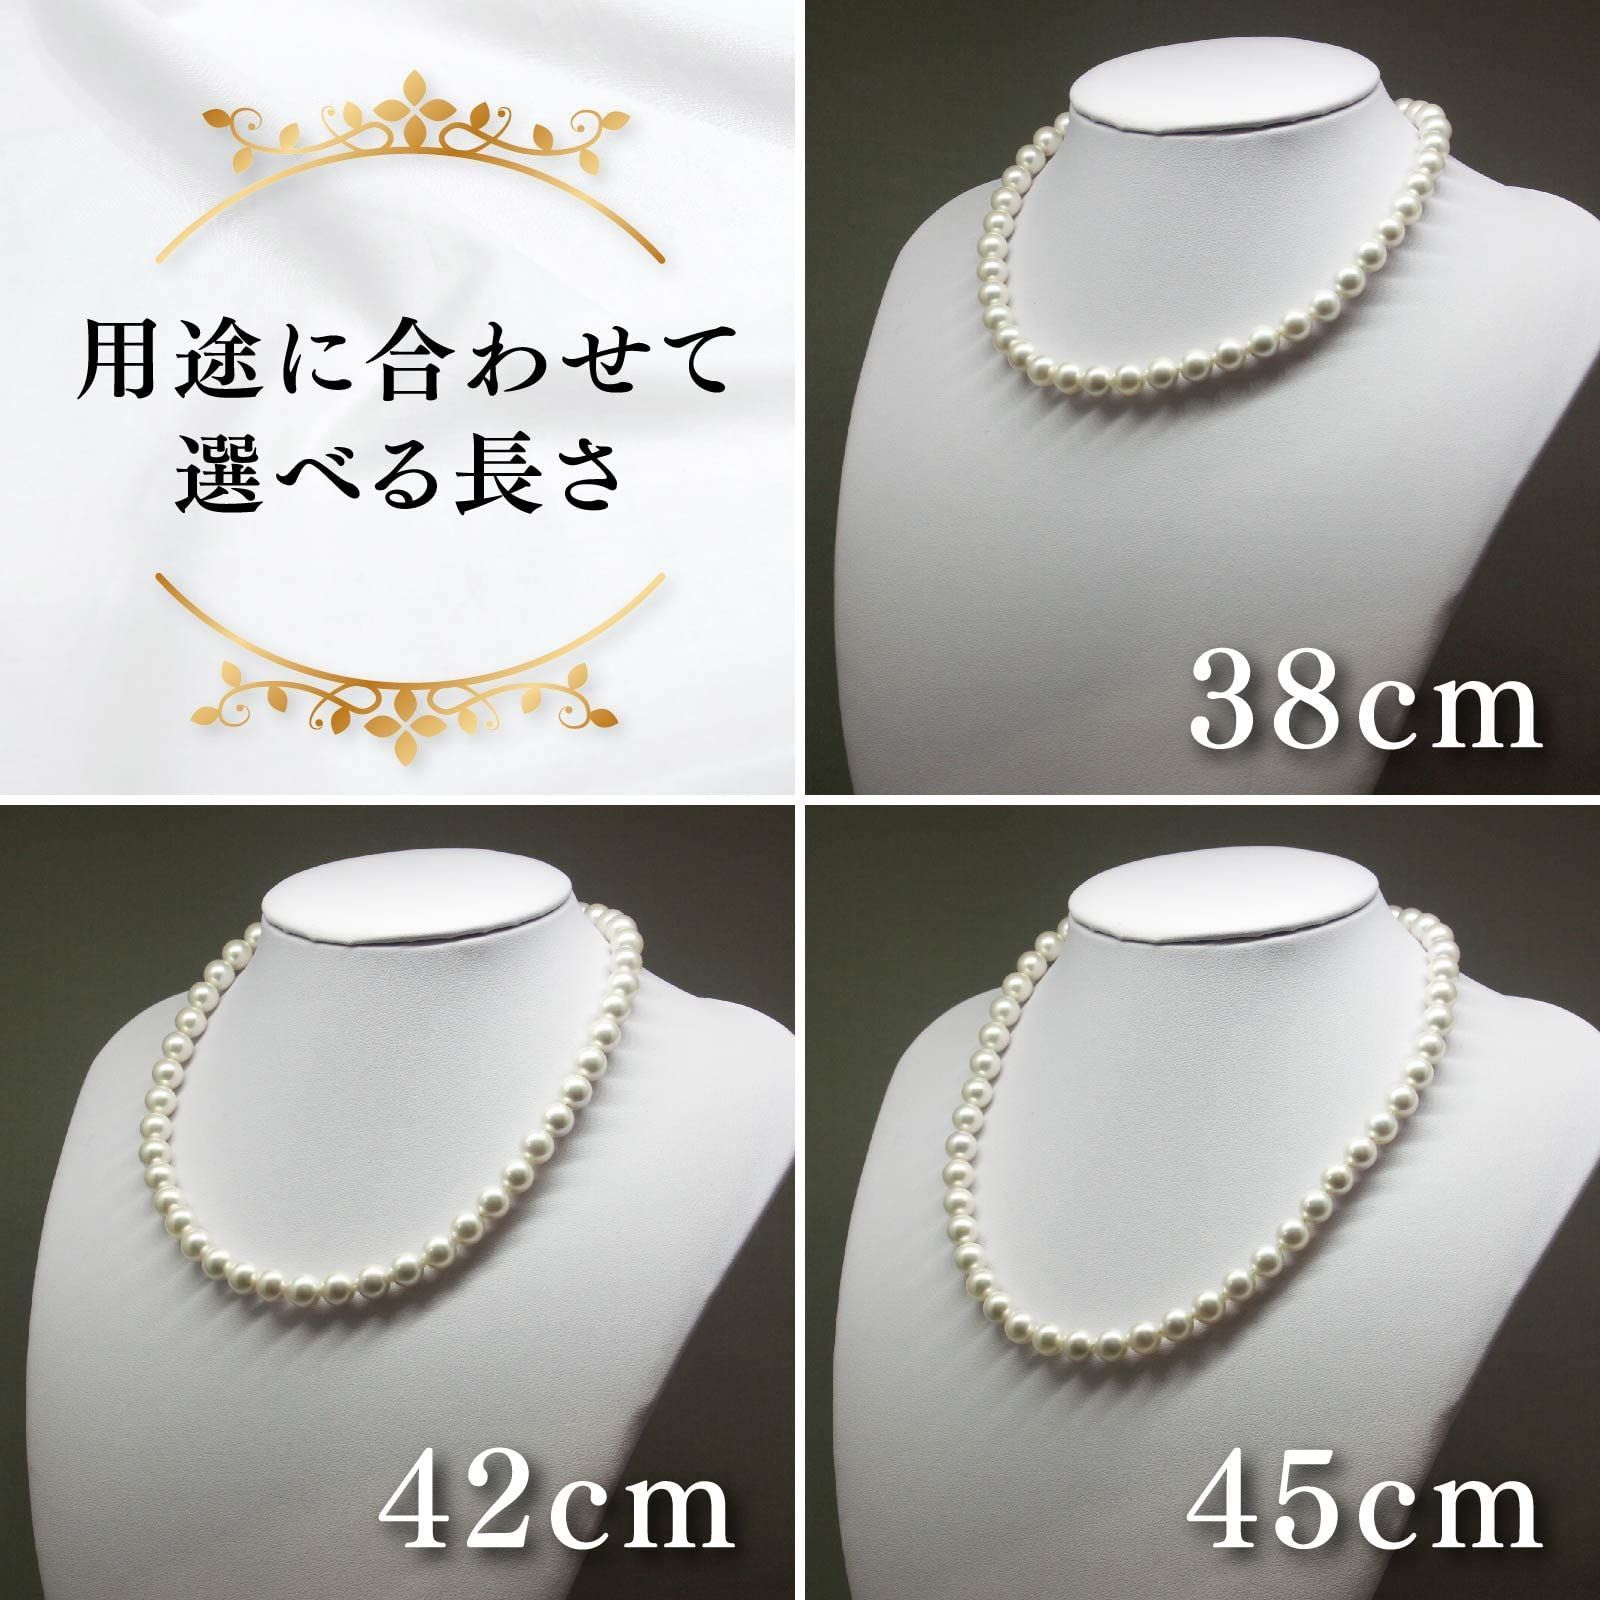 パールネックレス 日本製 花珠貝パール マグネット式 真珠のネックレス 選